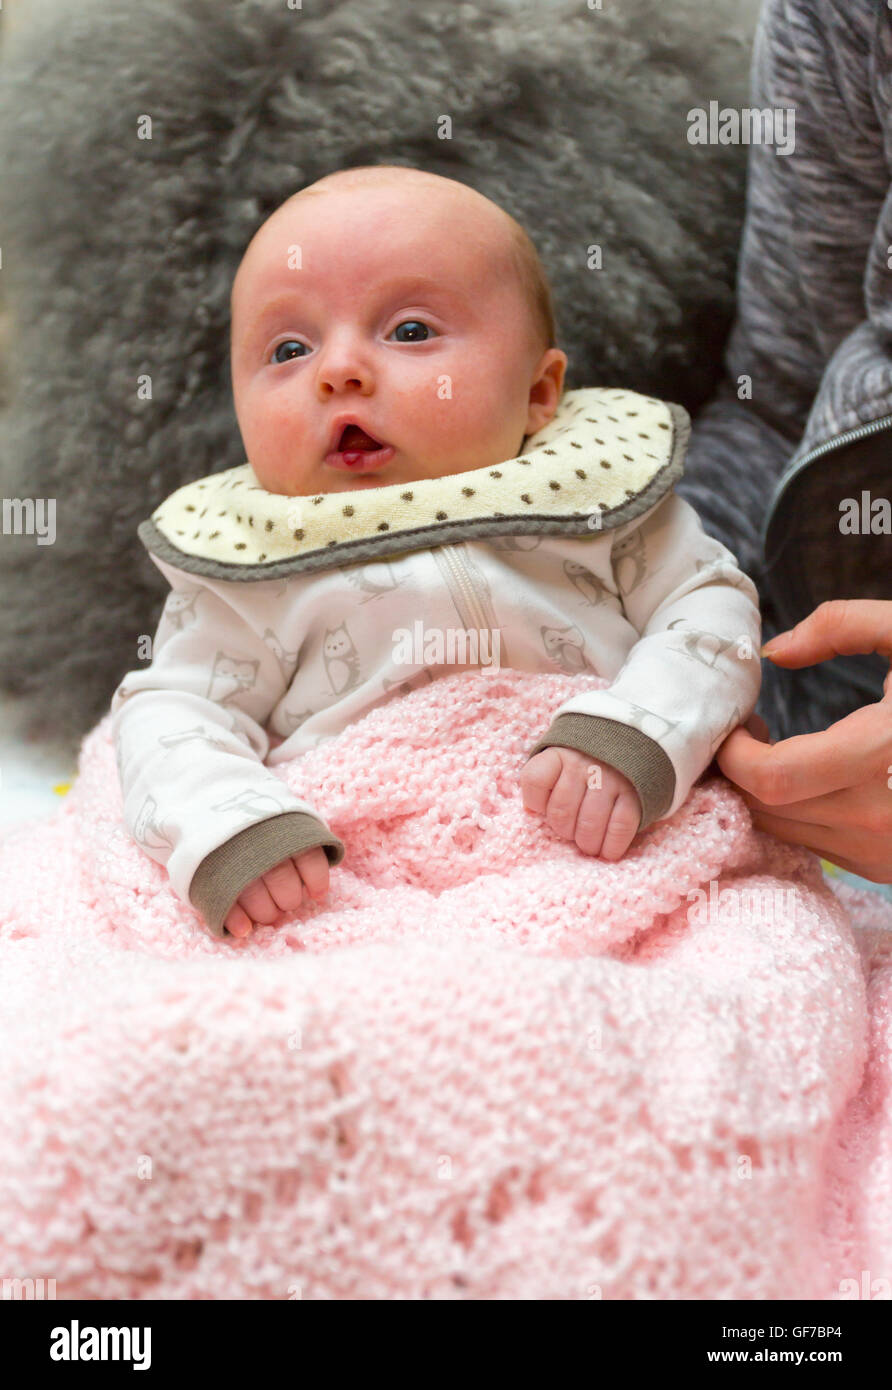 Un nourrisson de 2 mois avec tumeur bénigne, hémangiome sur sa lèvre Banque D'Images